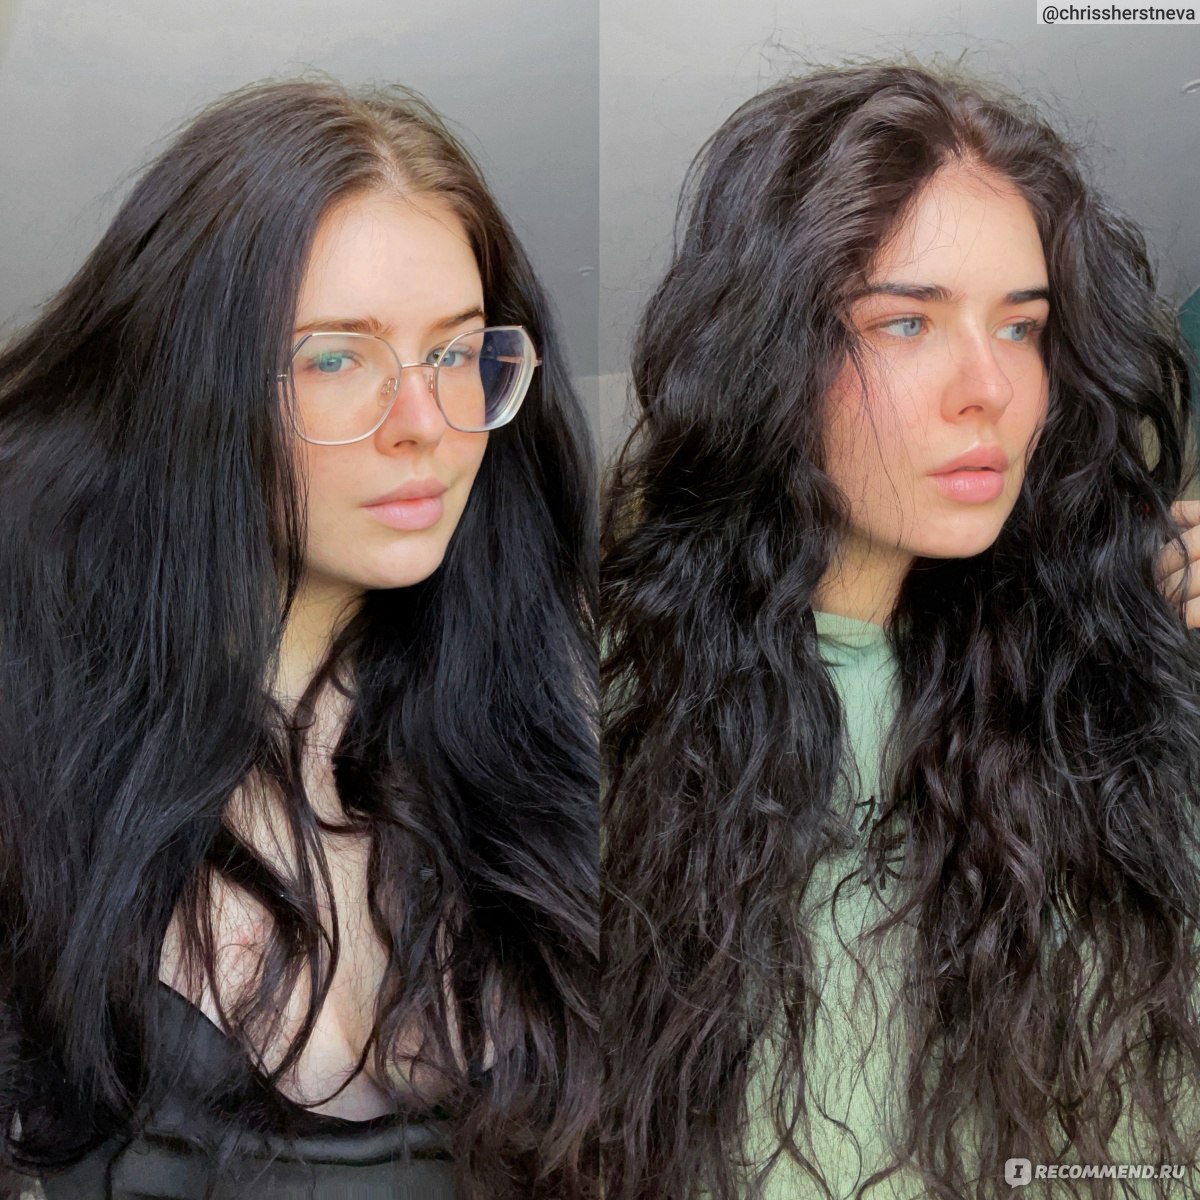 Краска для волос Garnier Color naturals "Глубокое питание, насыщенный цвет" 3.12 Ледяной тёмный шатен - отзыв 